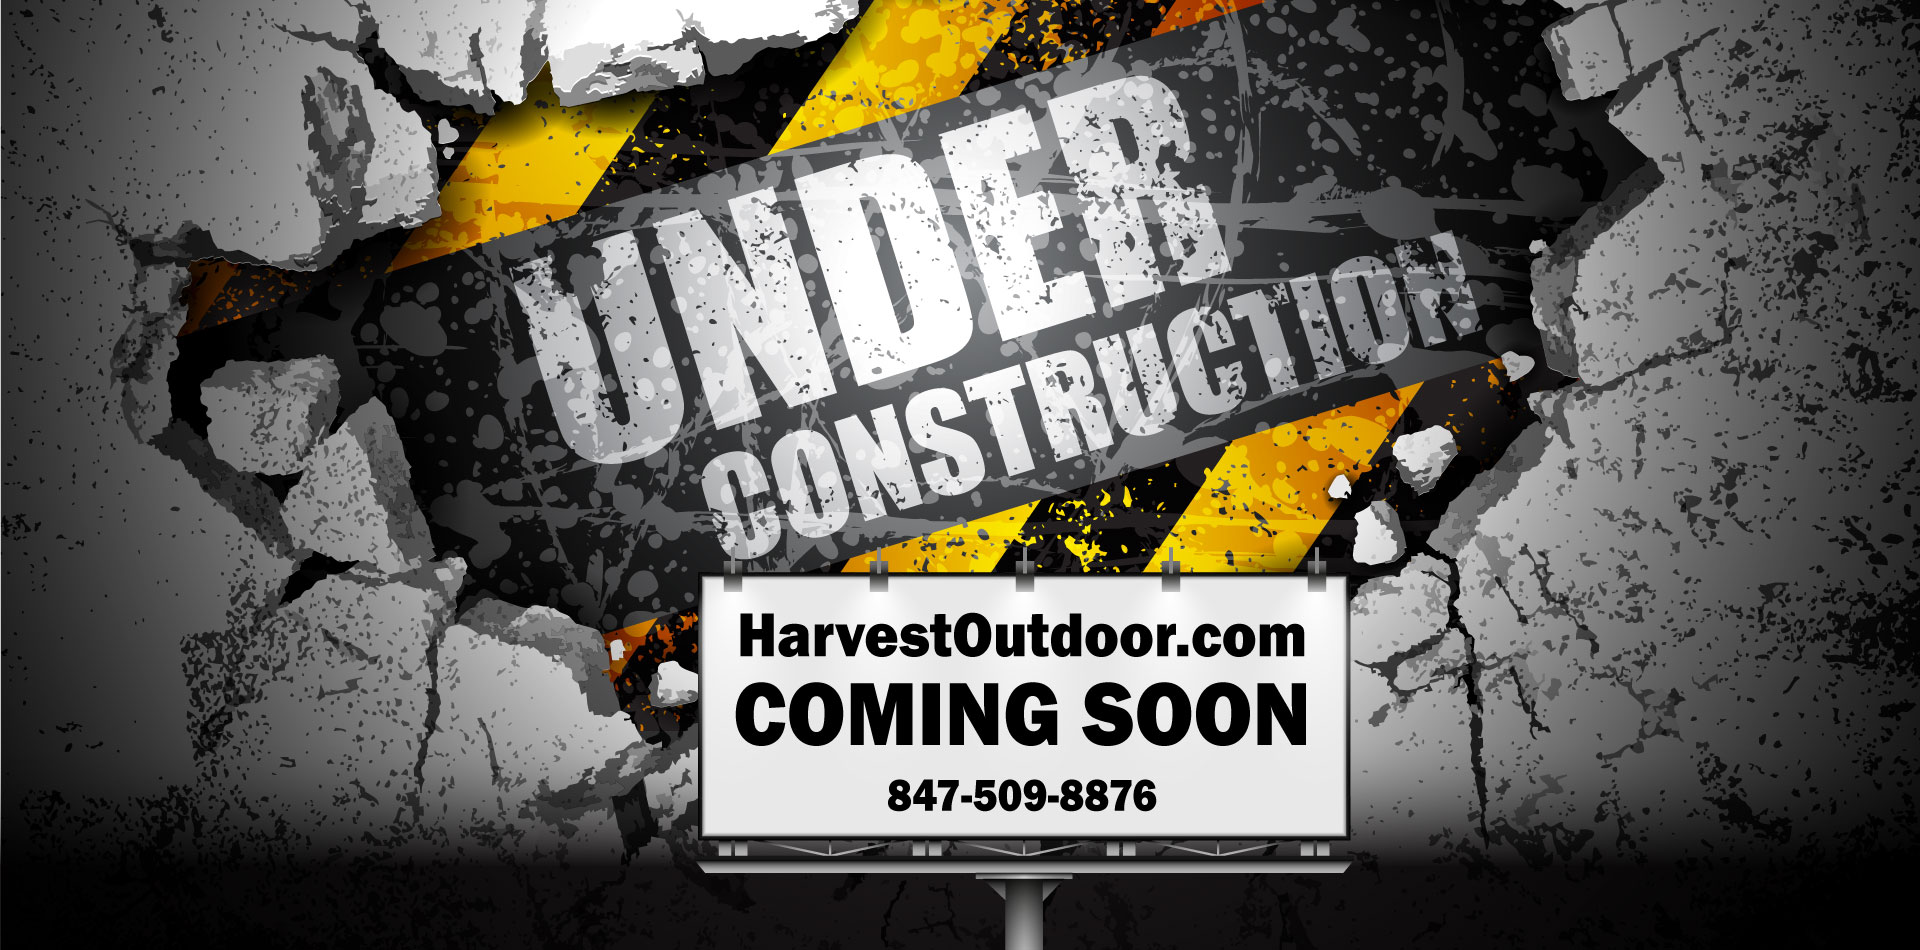 HarvestOutdoor.com Coming Soon